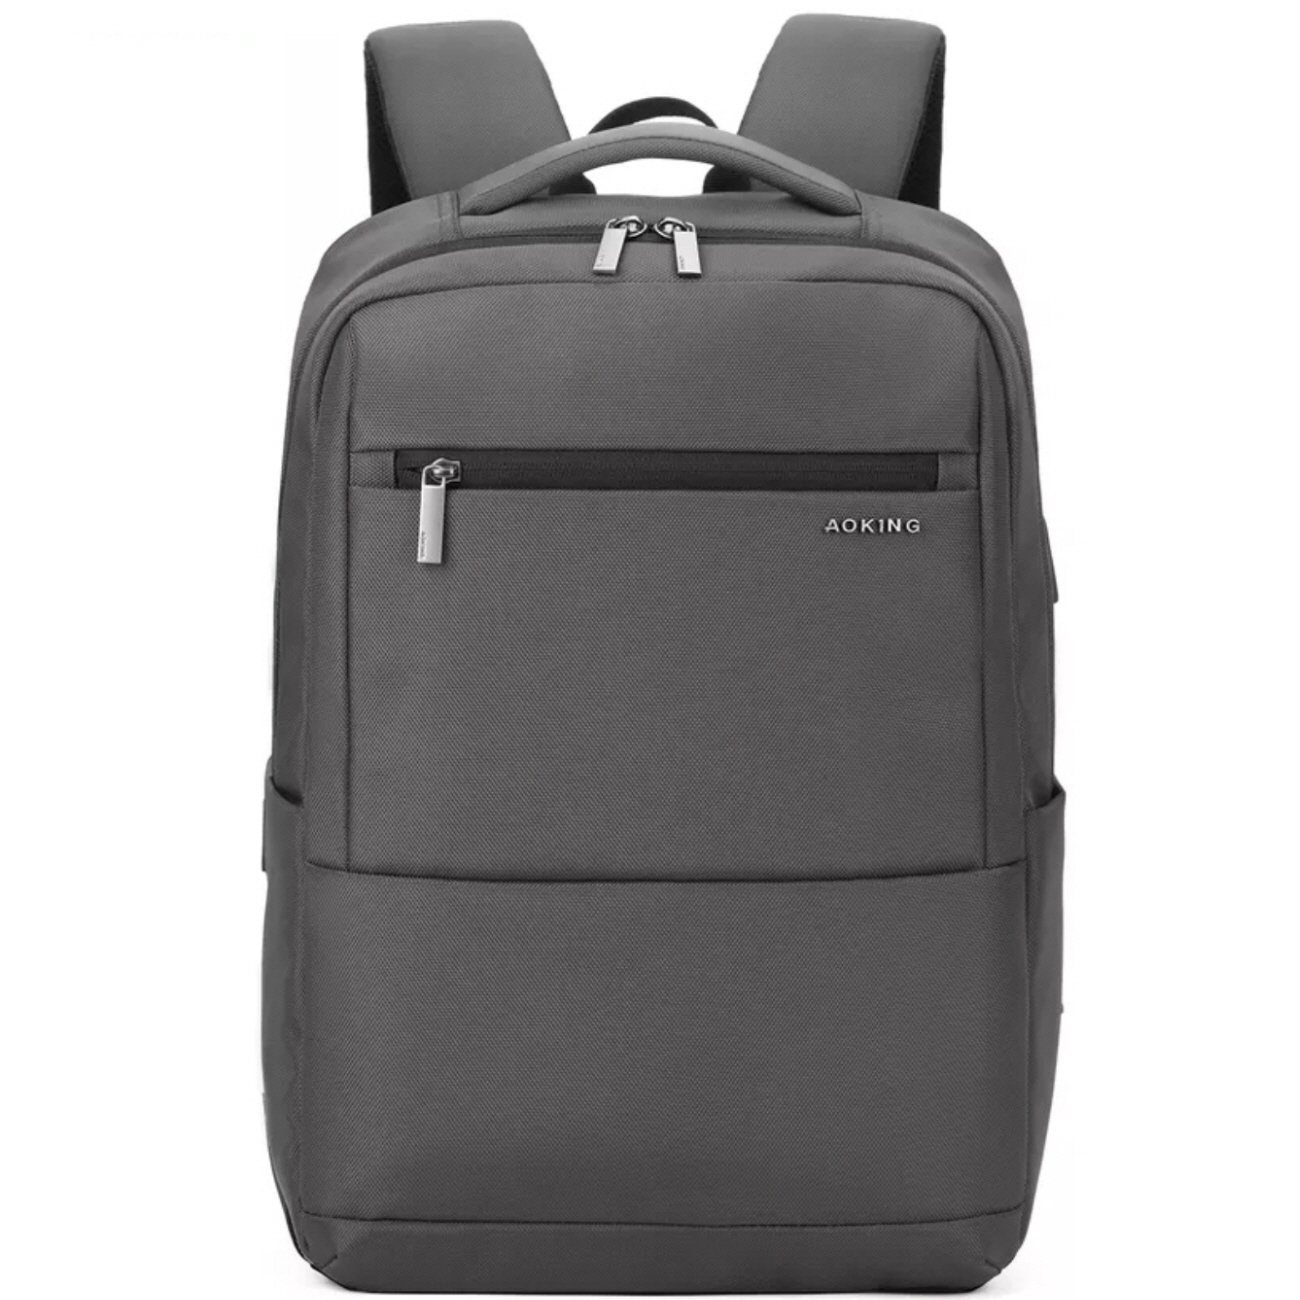 SHG Laptoprucksack Businessrucksack, Reiserucksack, Cityrucksack (grau), Backpack Handgepäck 15,6\